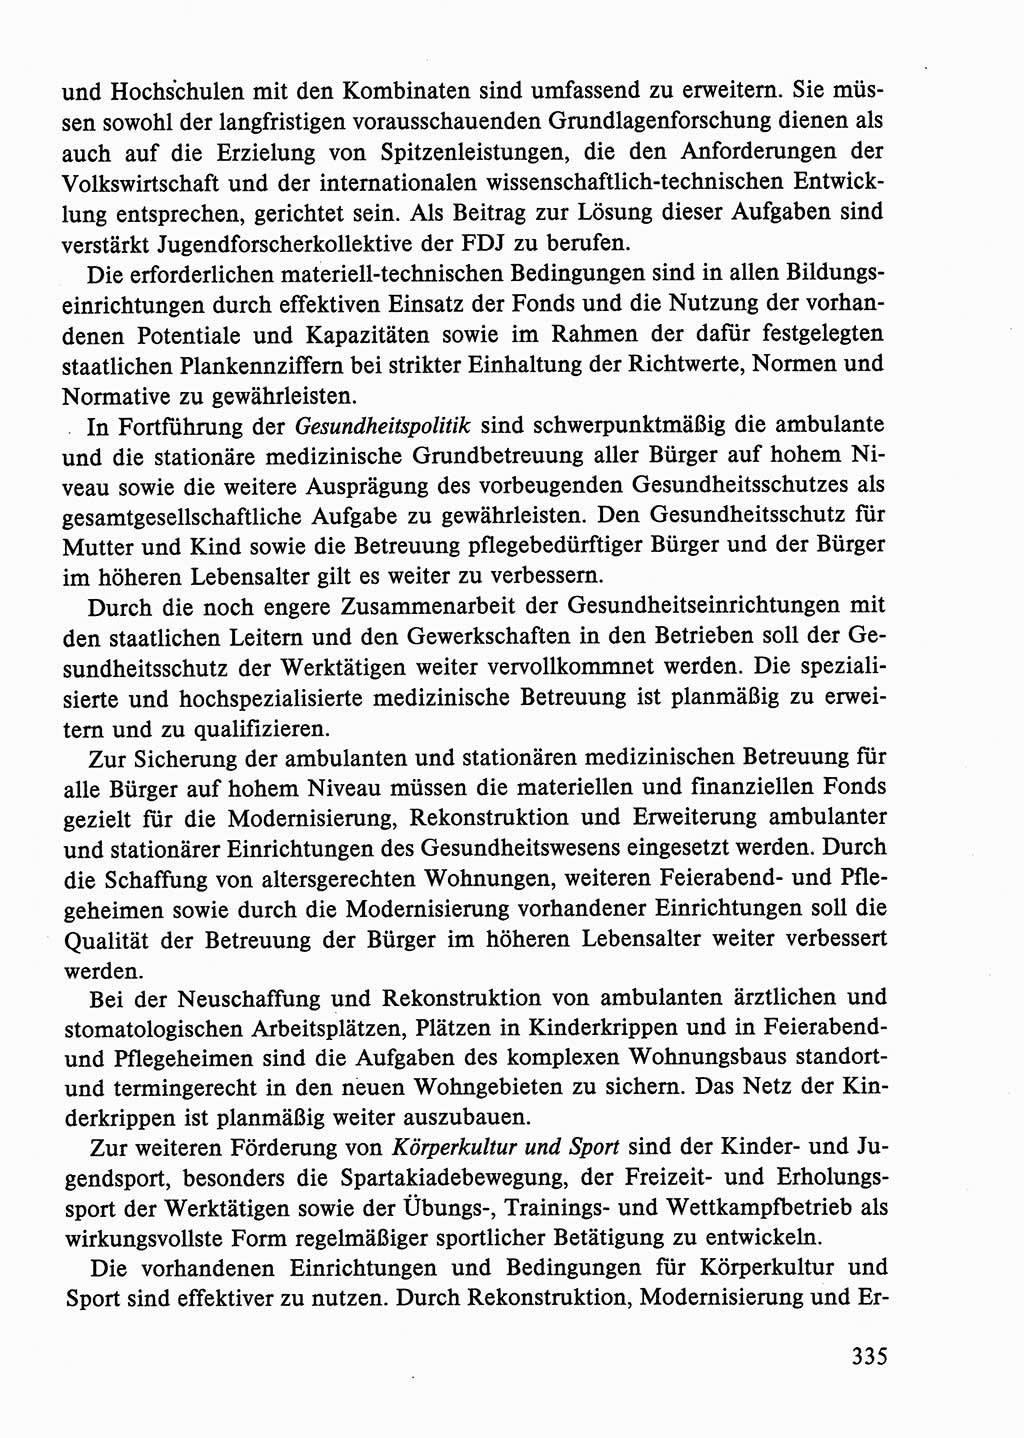 Dokumente der Sozialistischen Einheitspartei Deutschlands (SED) [Deutsche Demokratische Republik (DDR)] 1986-1987, Seite 335 (Dok. SED DDR 1986-1987, S. 335)